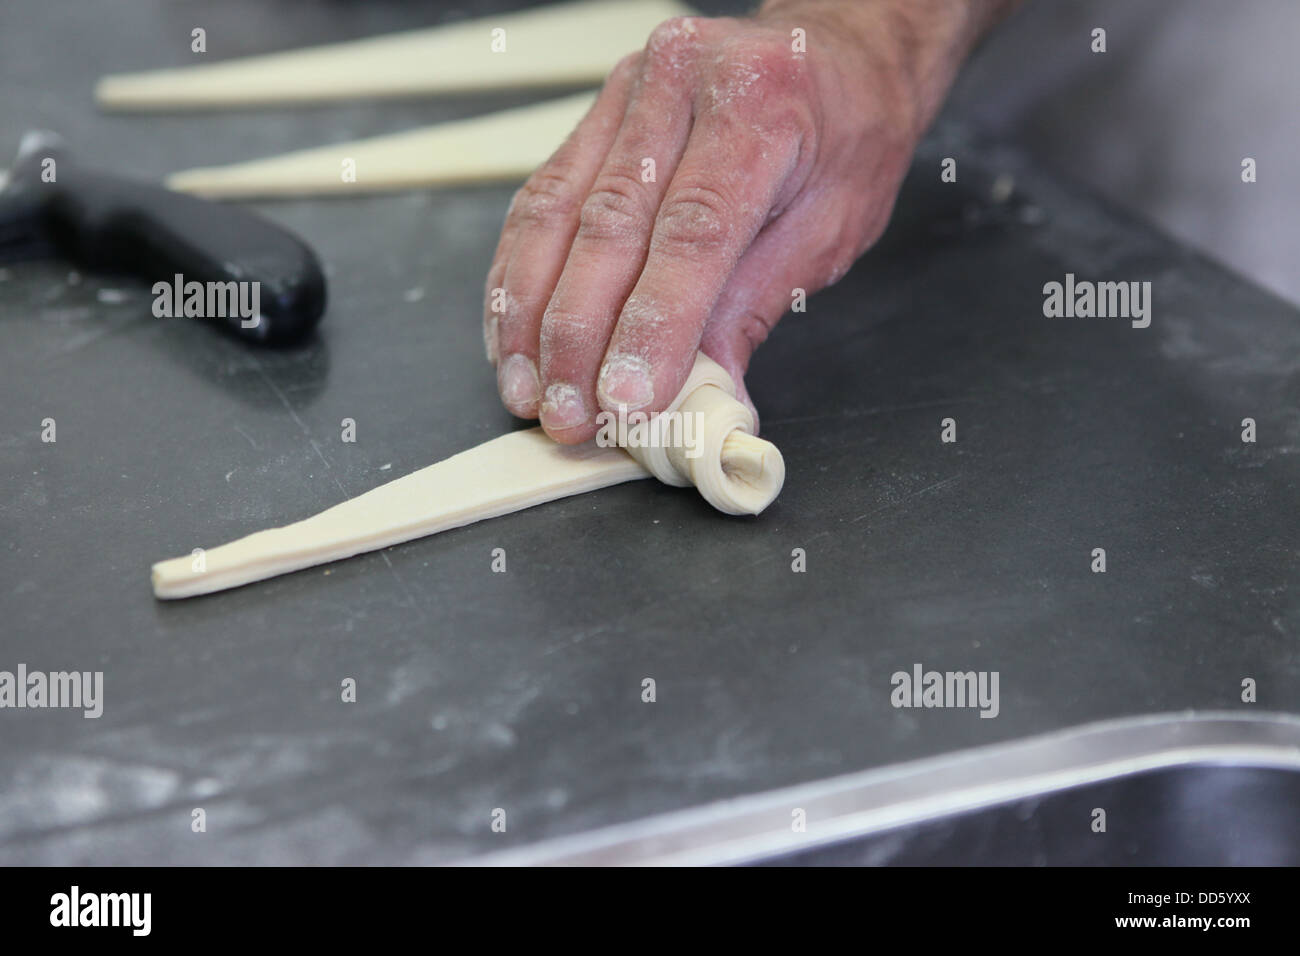 La préparation des croissants dans une boulangerie fabriqués à partir de pâte feuilletée Banque D'Images